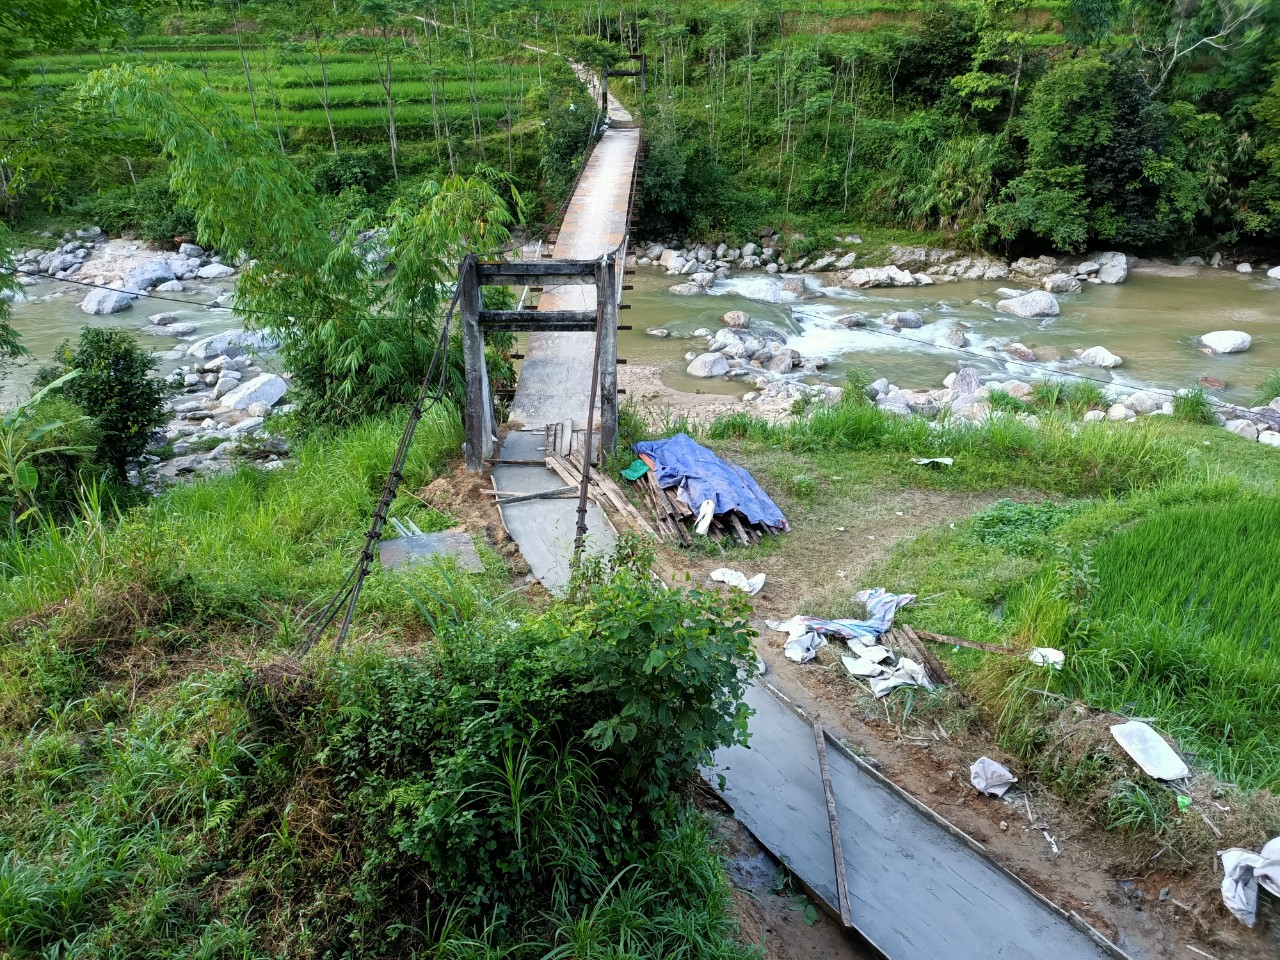 Sửa chữa cây cầu gỗ mục ở Hà Giang: Hoàn thiện phần mặt cầu - Ảnh 1.